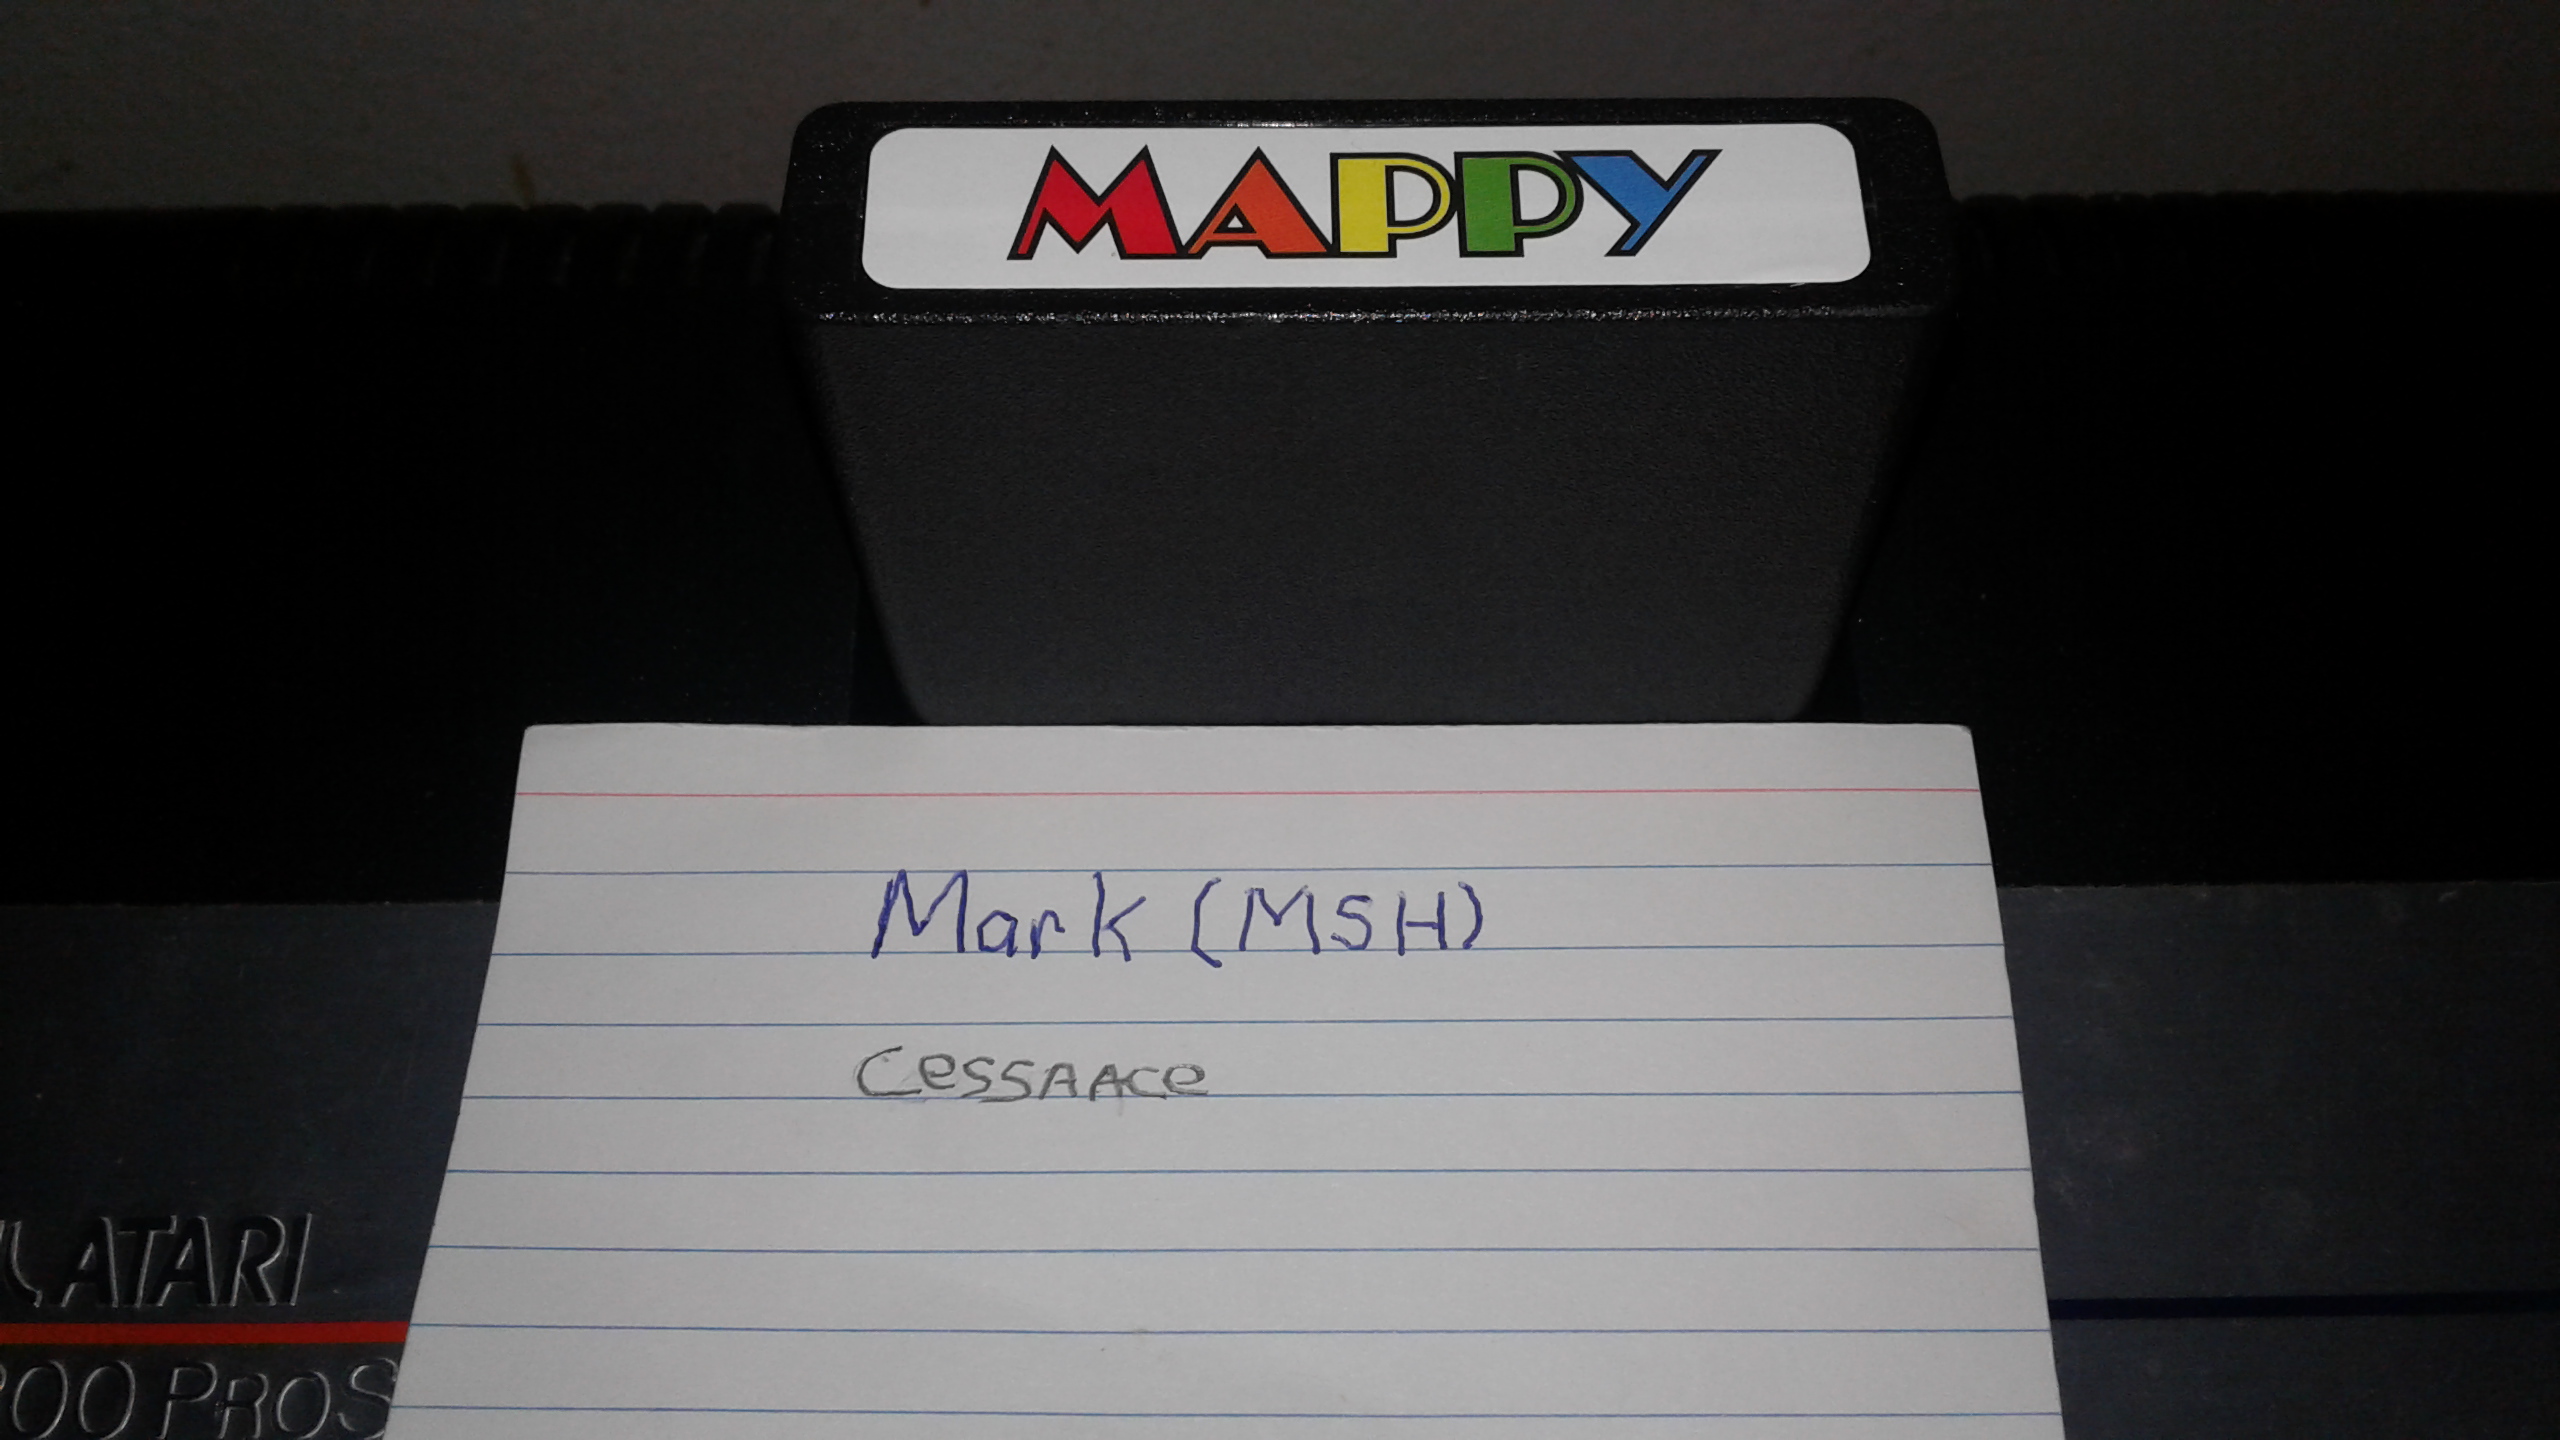 Mark: Mappy [Standard] (Atari 2600) 45,120 points on 2019-05-18 01:23:03